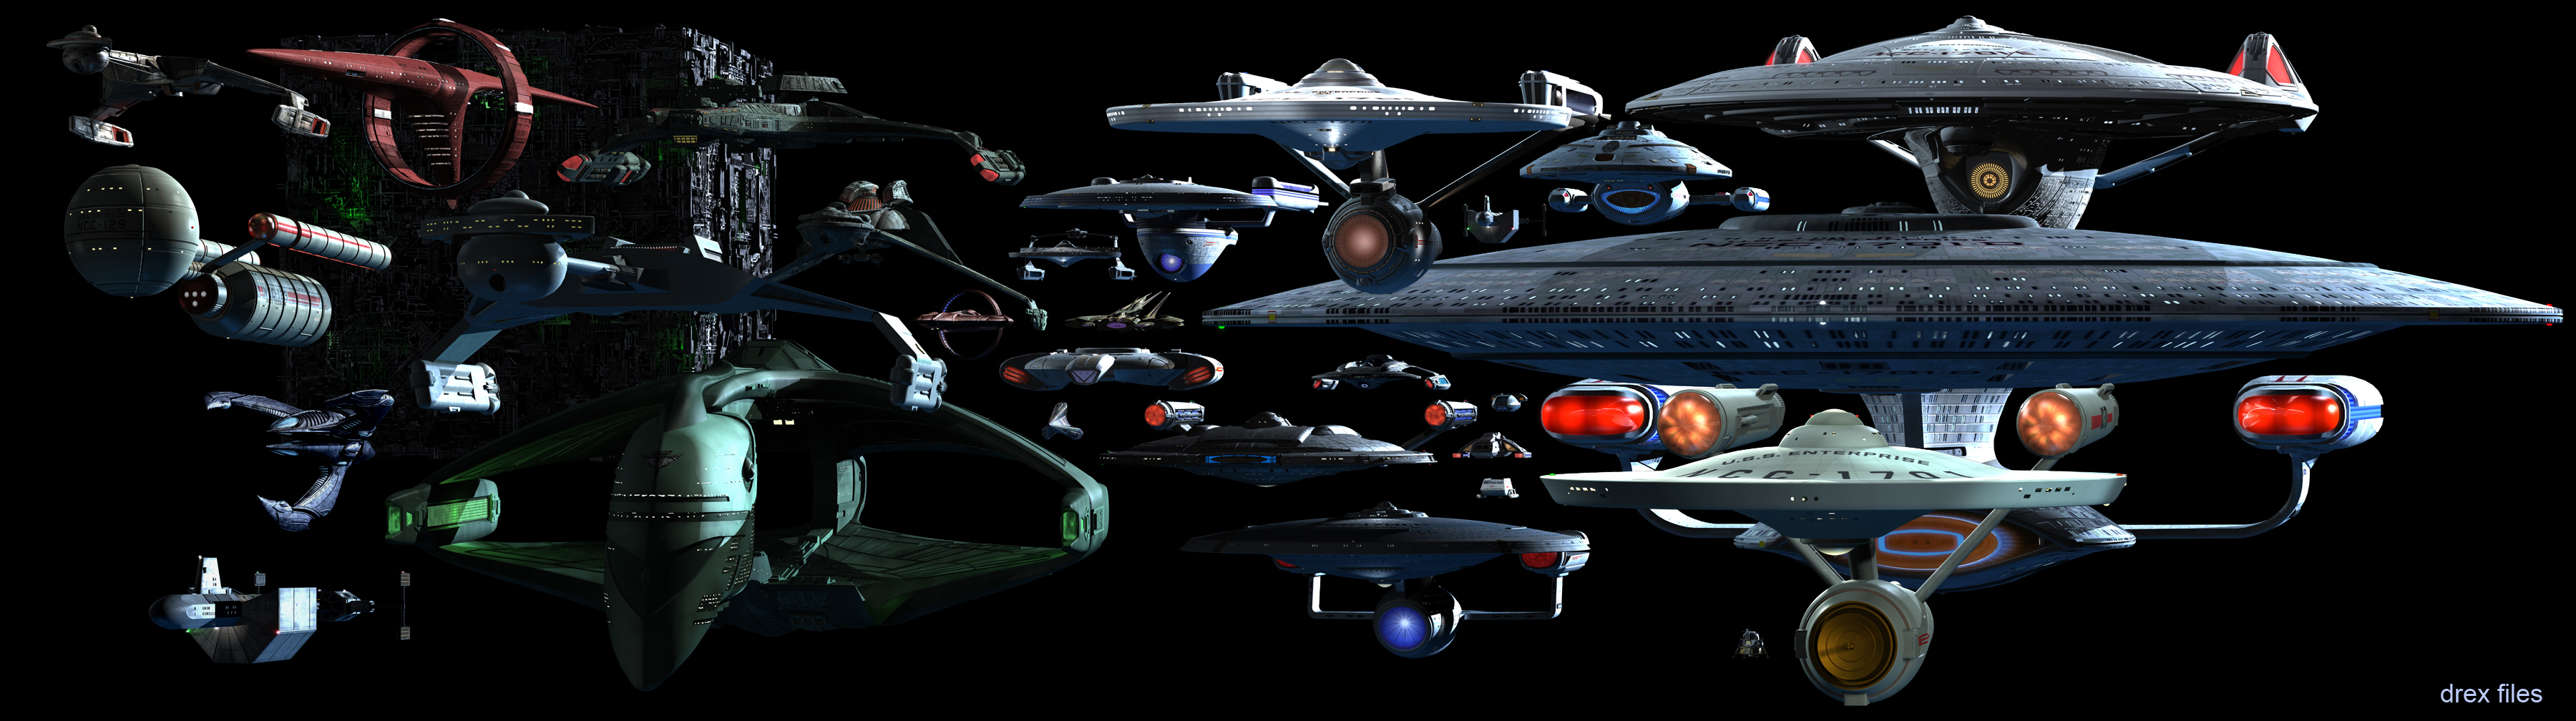 Star Trek Spaceships Wallpaper Background